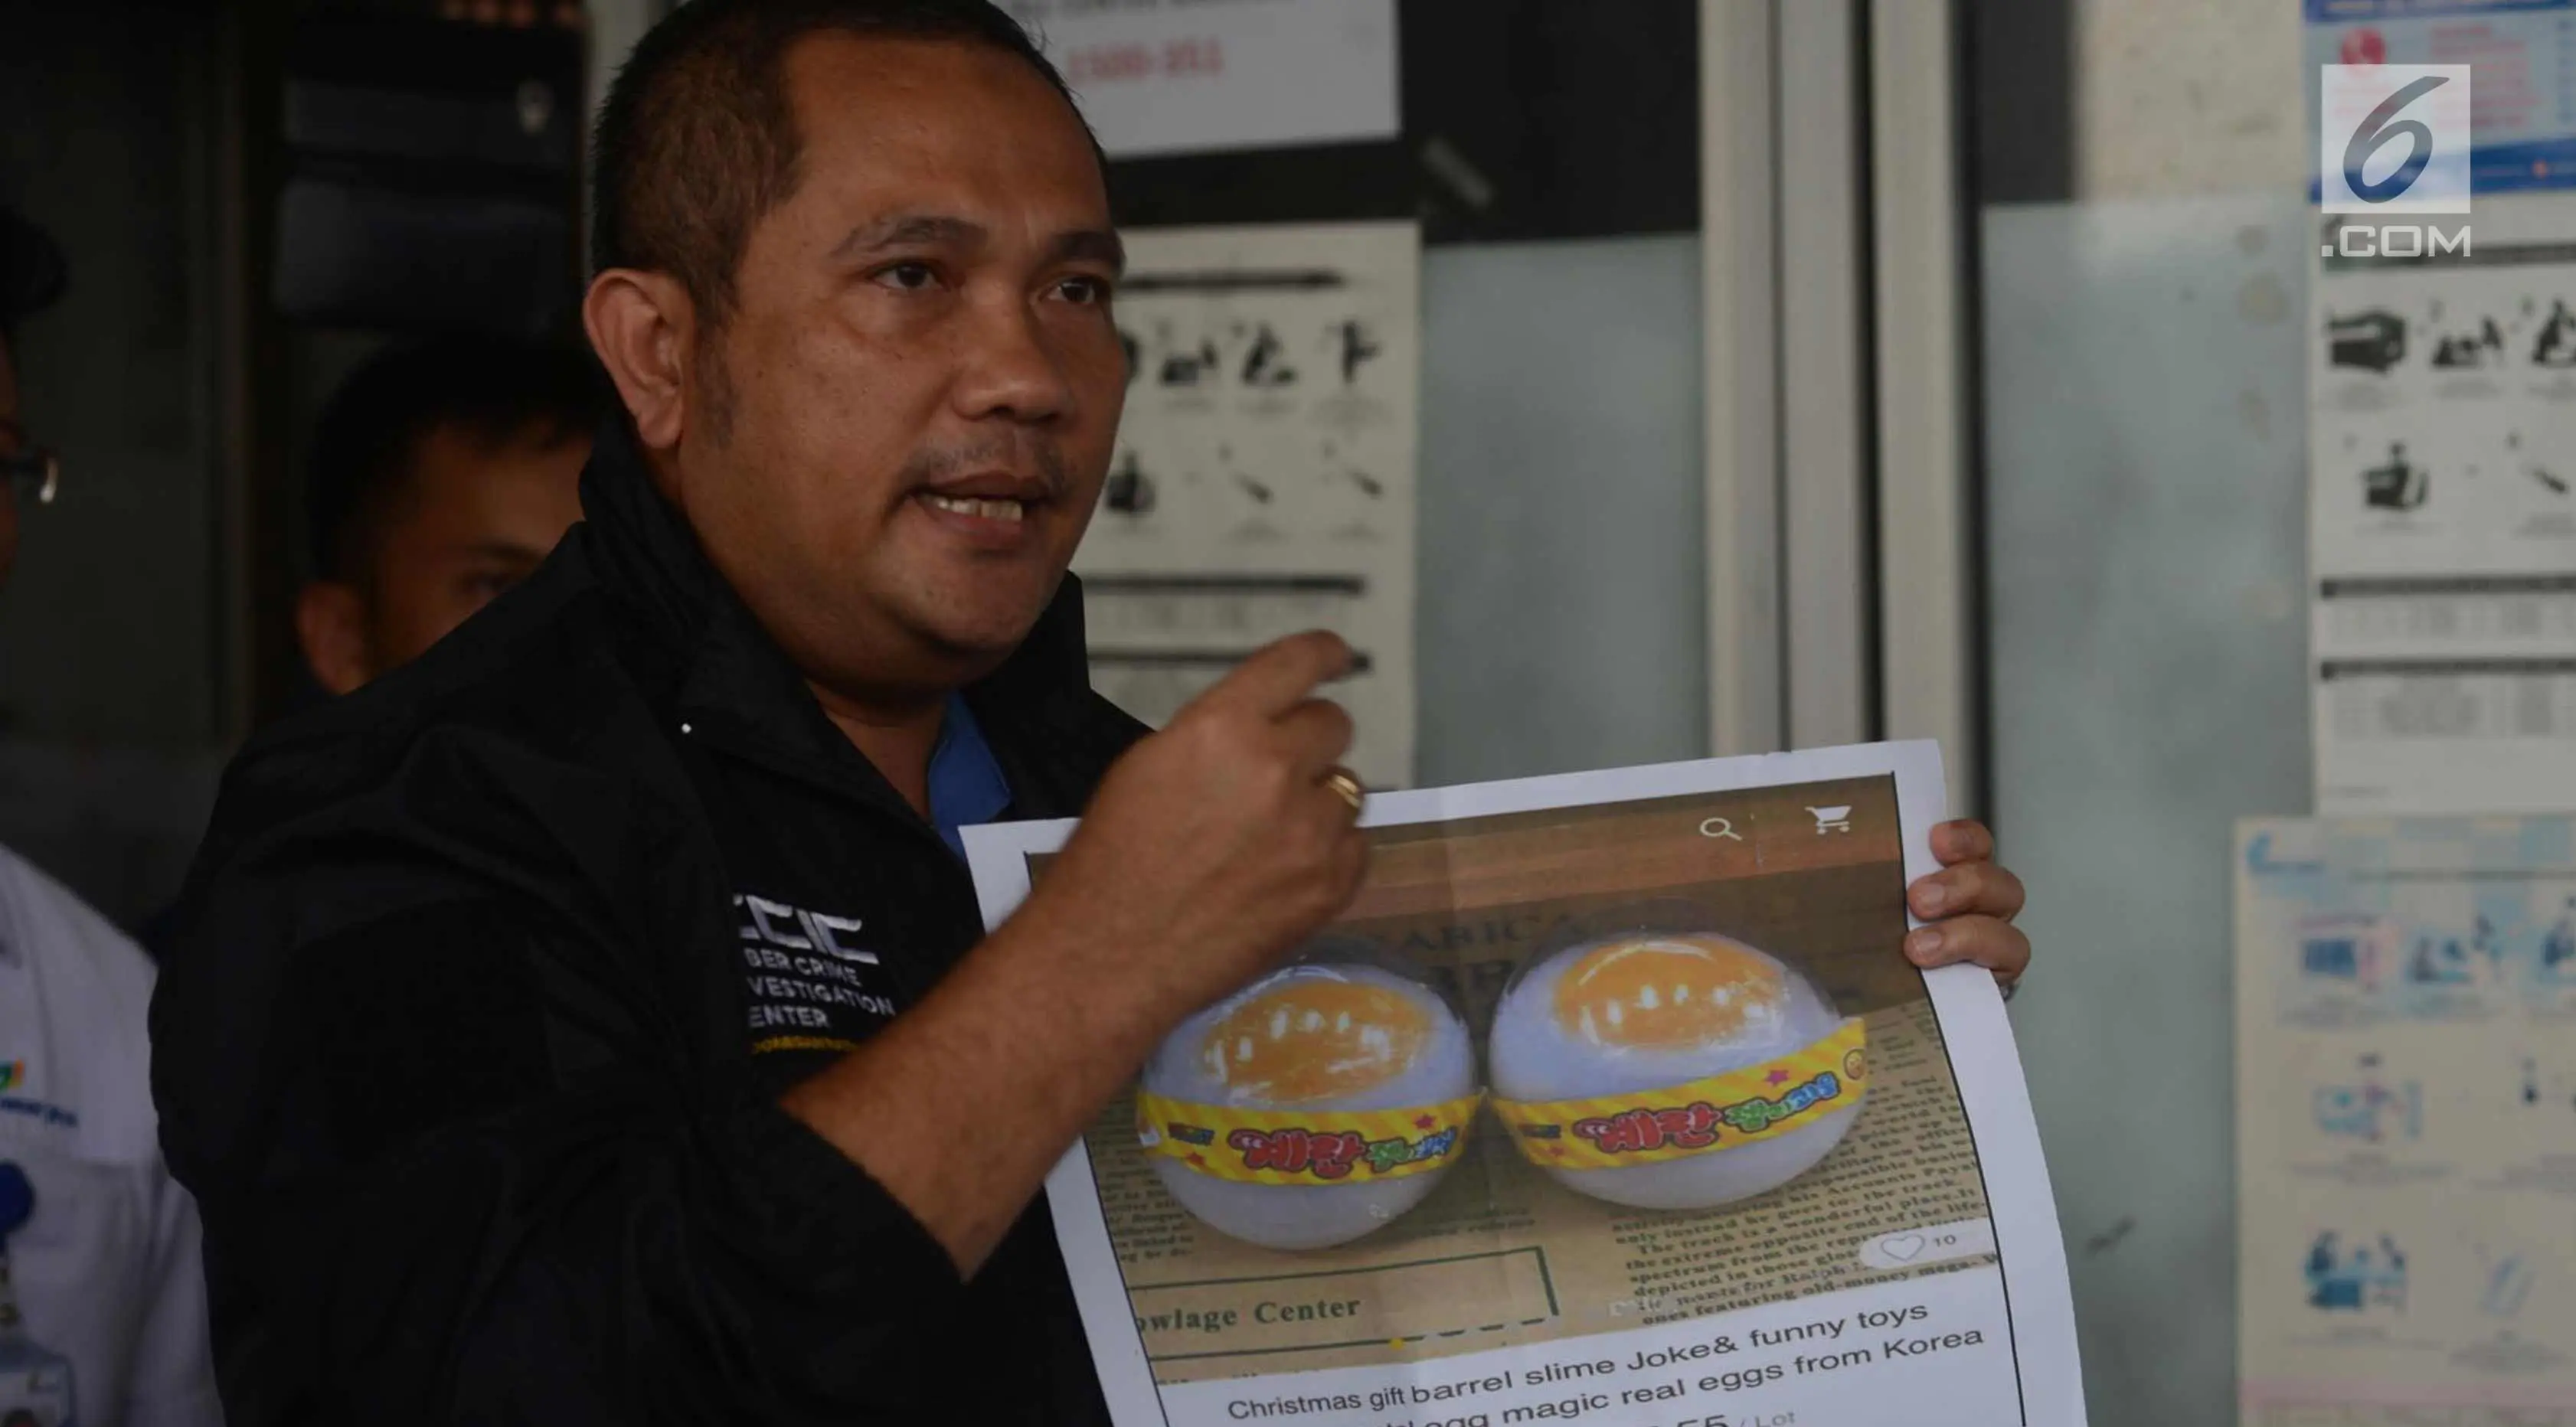 Petugas menjelaskan keaslian telur di Pasar Johar Baru, Jakarta, Selasa (27/3). Sebelumnya, viral di media sosial video telur palsu berada di pasar tersebut. Namun, setelah diuji sampel, telur tersebut memiliki kualitas bagus. (Merdeka.com/Imam Buhori)